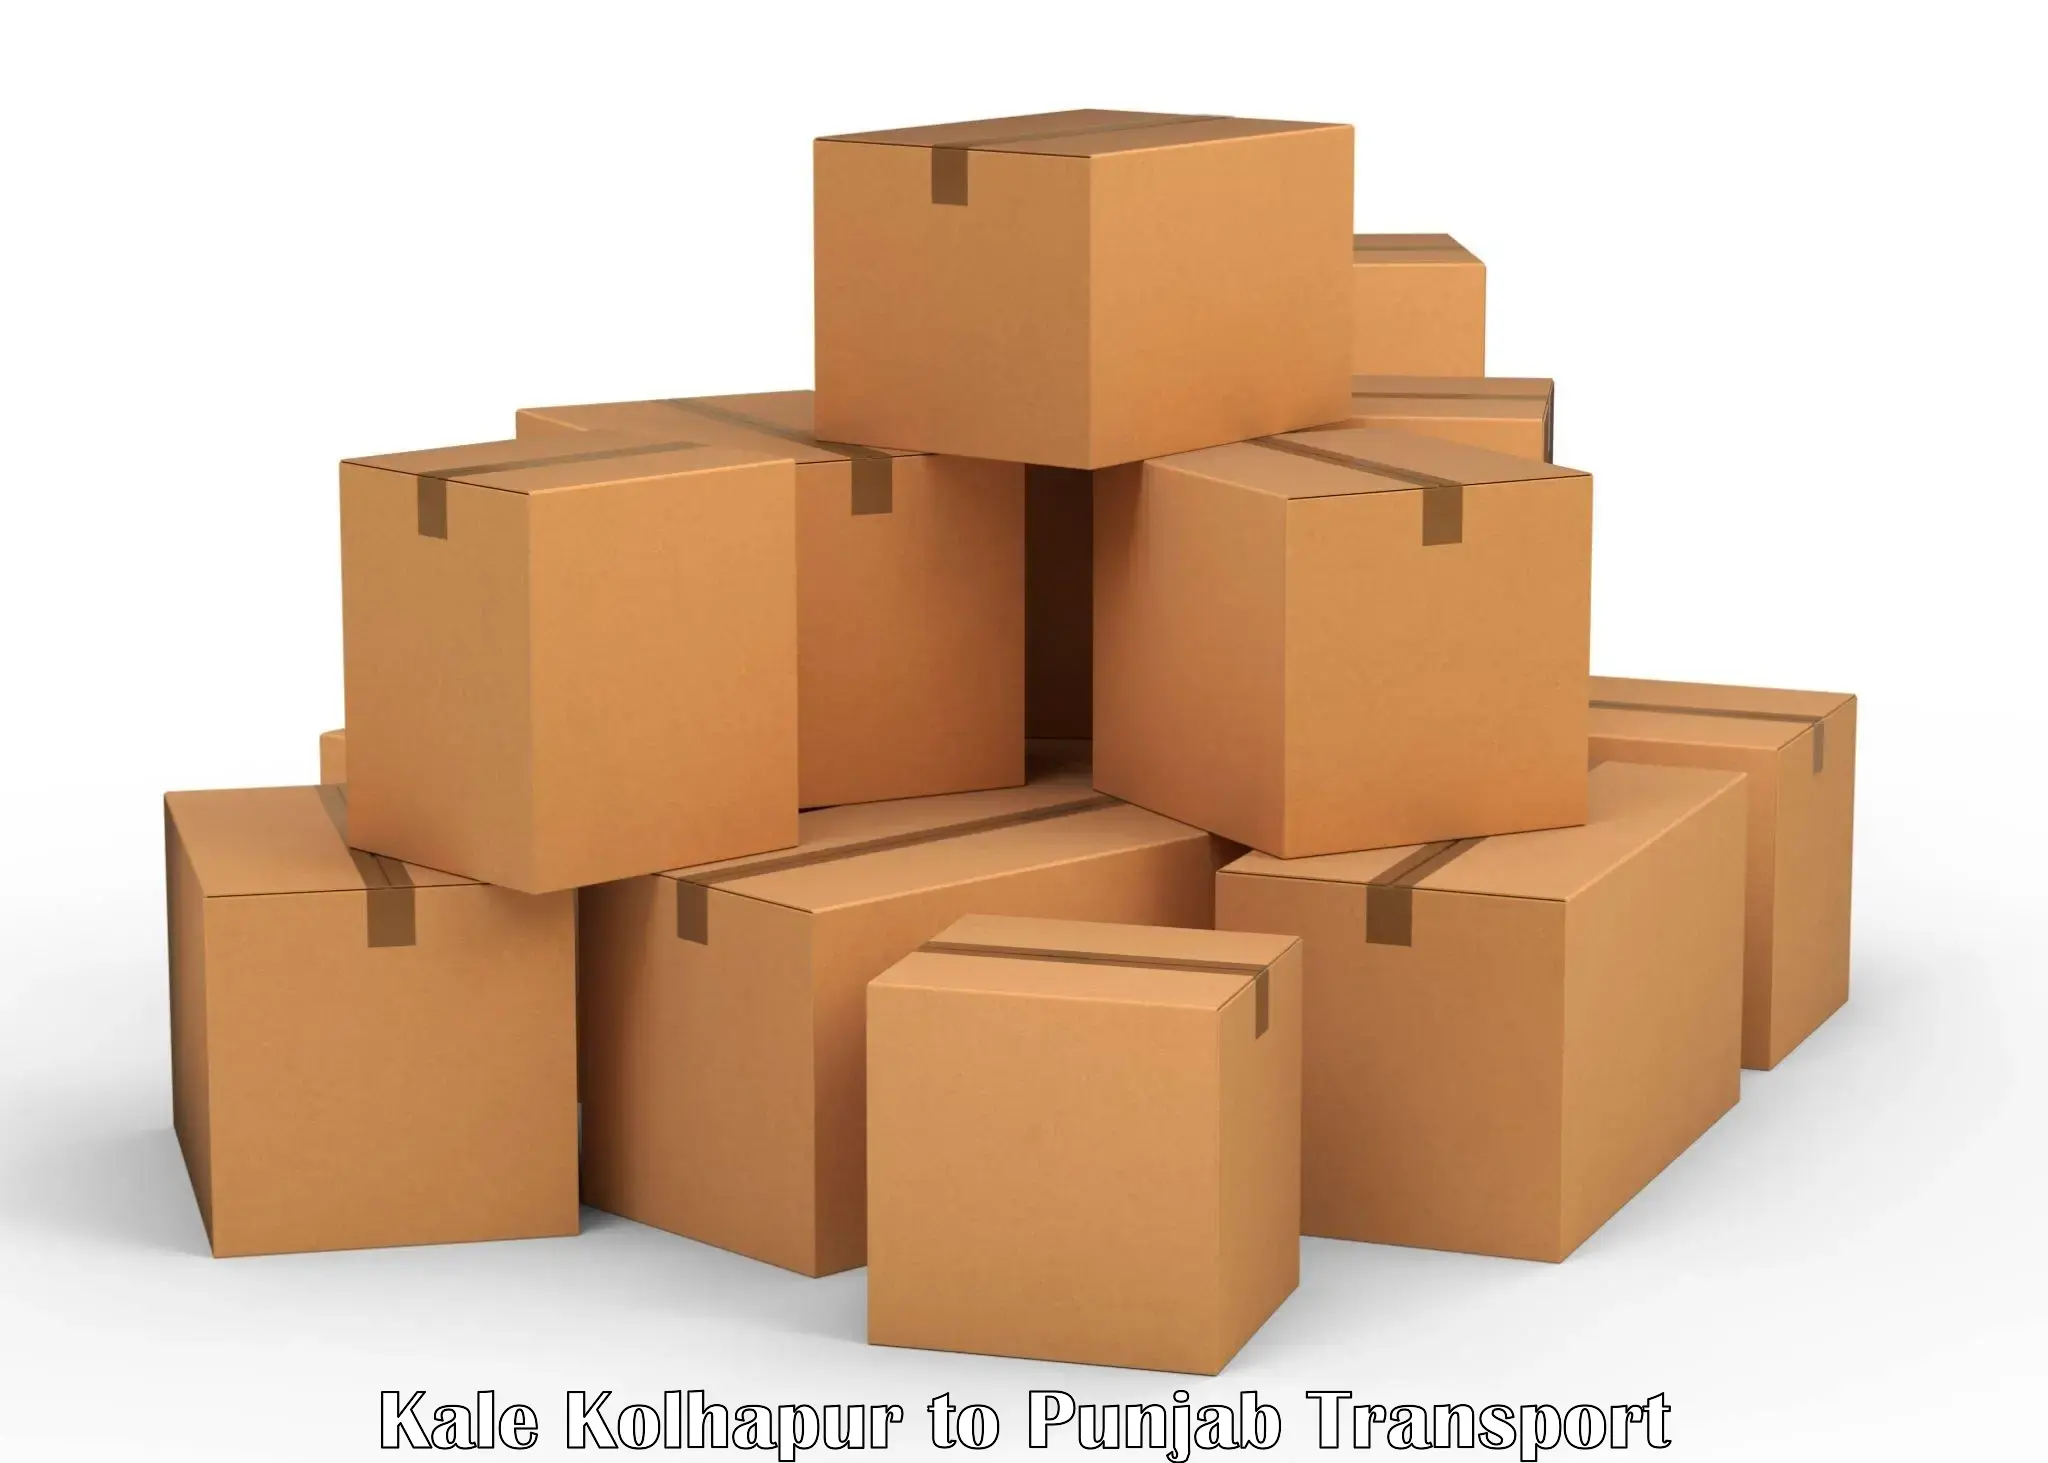 Vehicle parcel service Kale Kolhapur to IIT Ropar